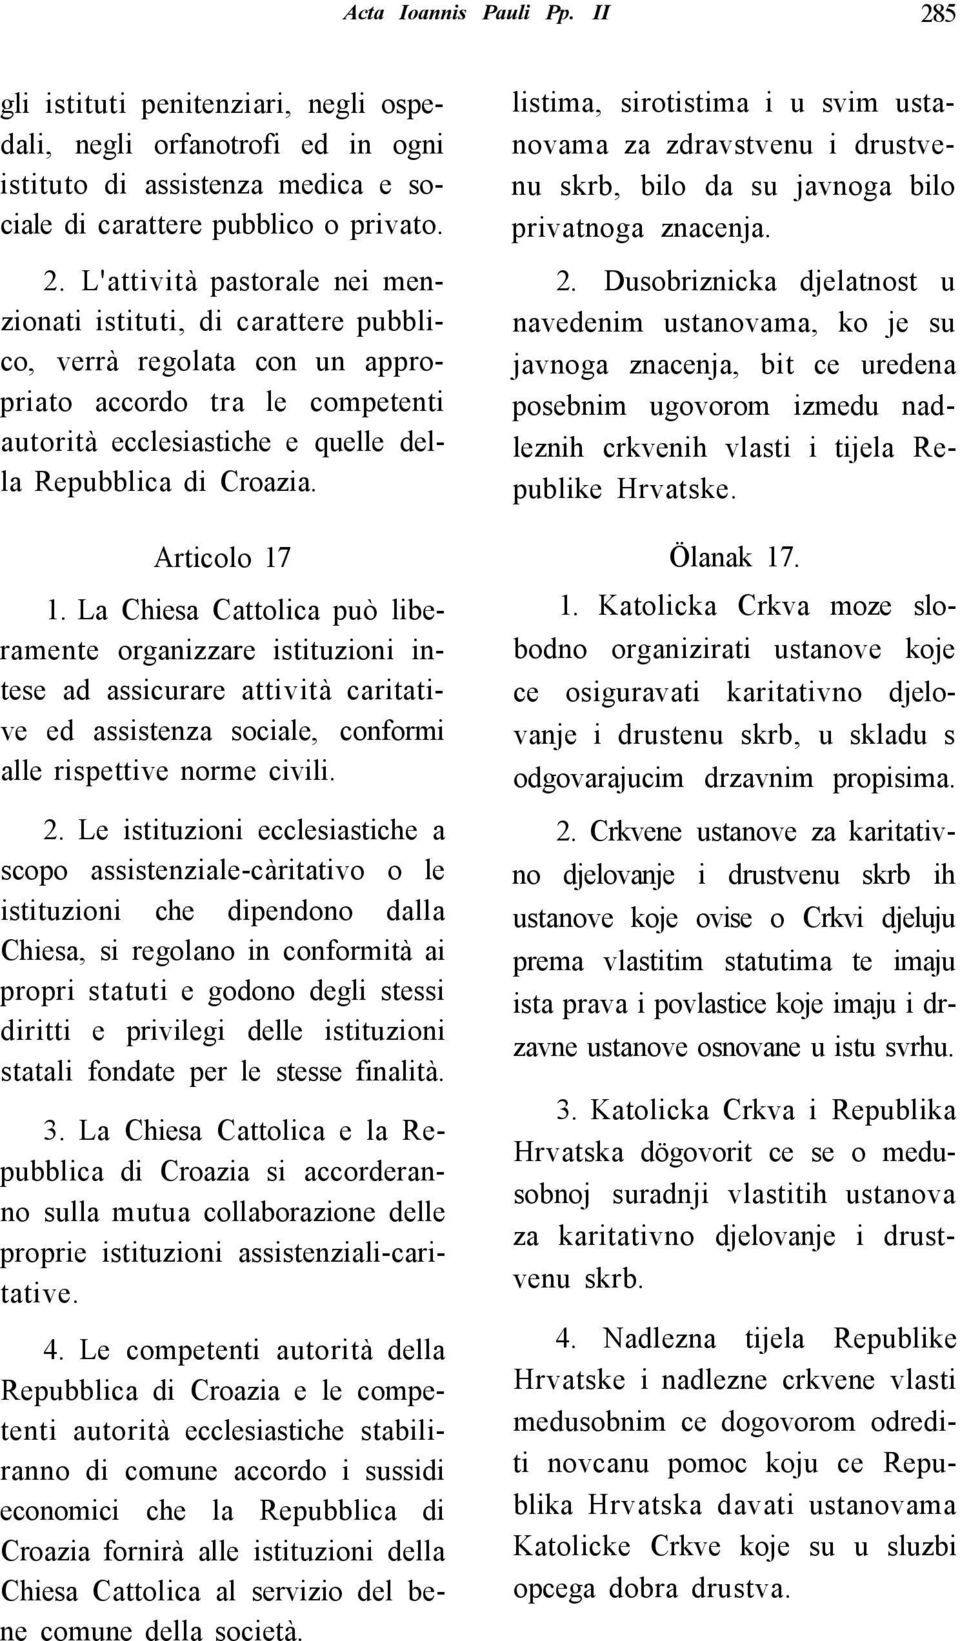 L'attività pastorale nei menzionati istituti, di carattere pubblico, verrà regolata con un appropriato accordo tra le competenti autorità ecclesiastiche e quelle della Repubblica di Croazia.